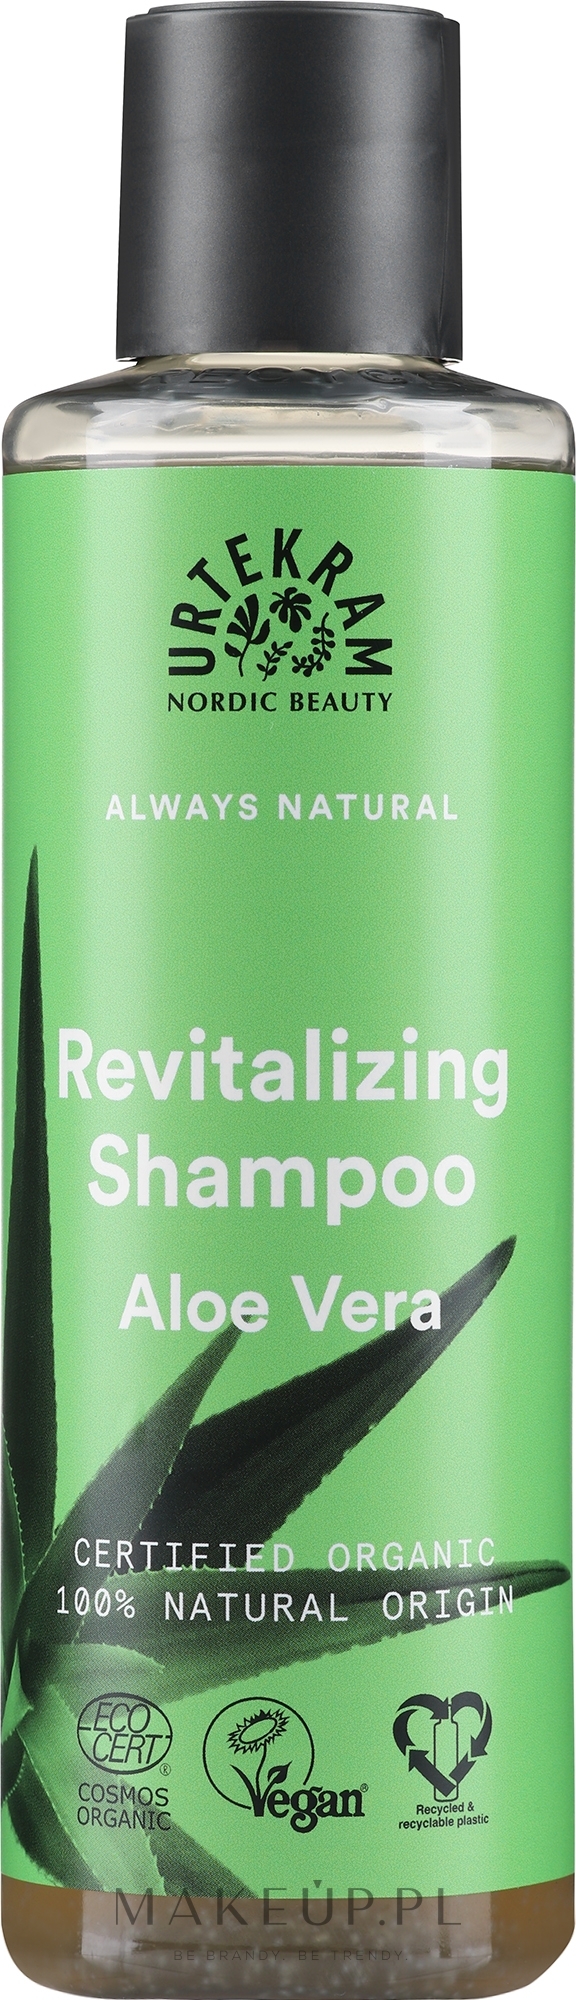 szampon do włosów pokrzywowy eko 250ml wixaz